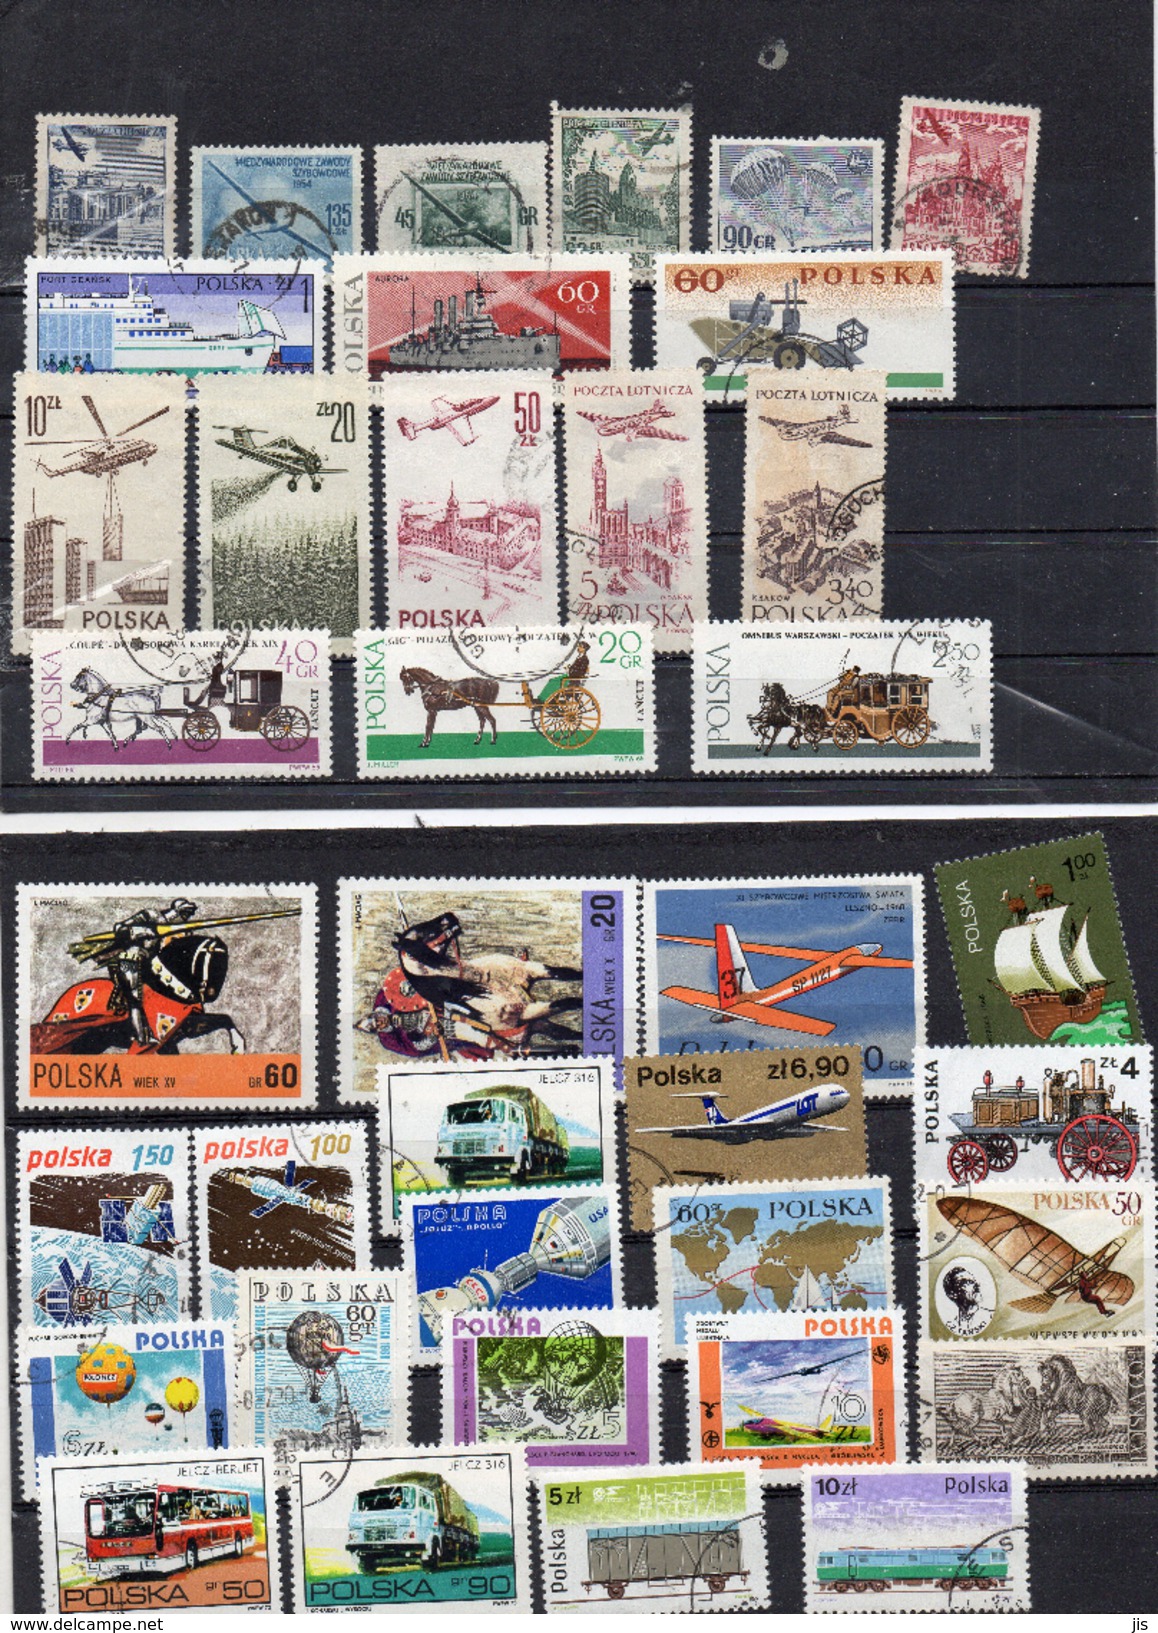 POLOGNE prés de 600 timbres différents oblitérés